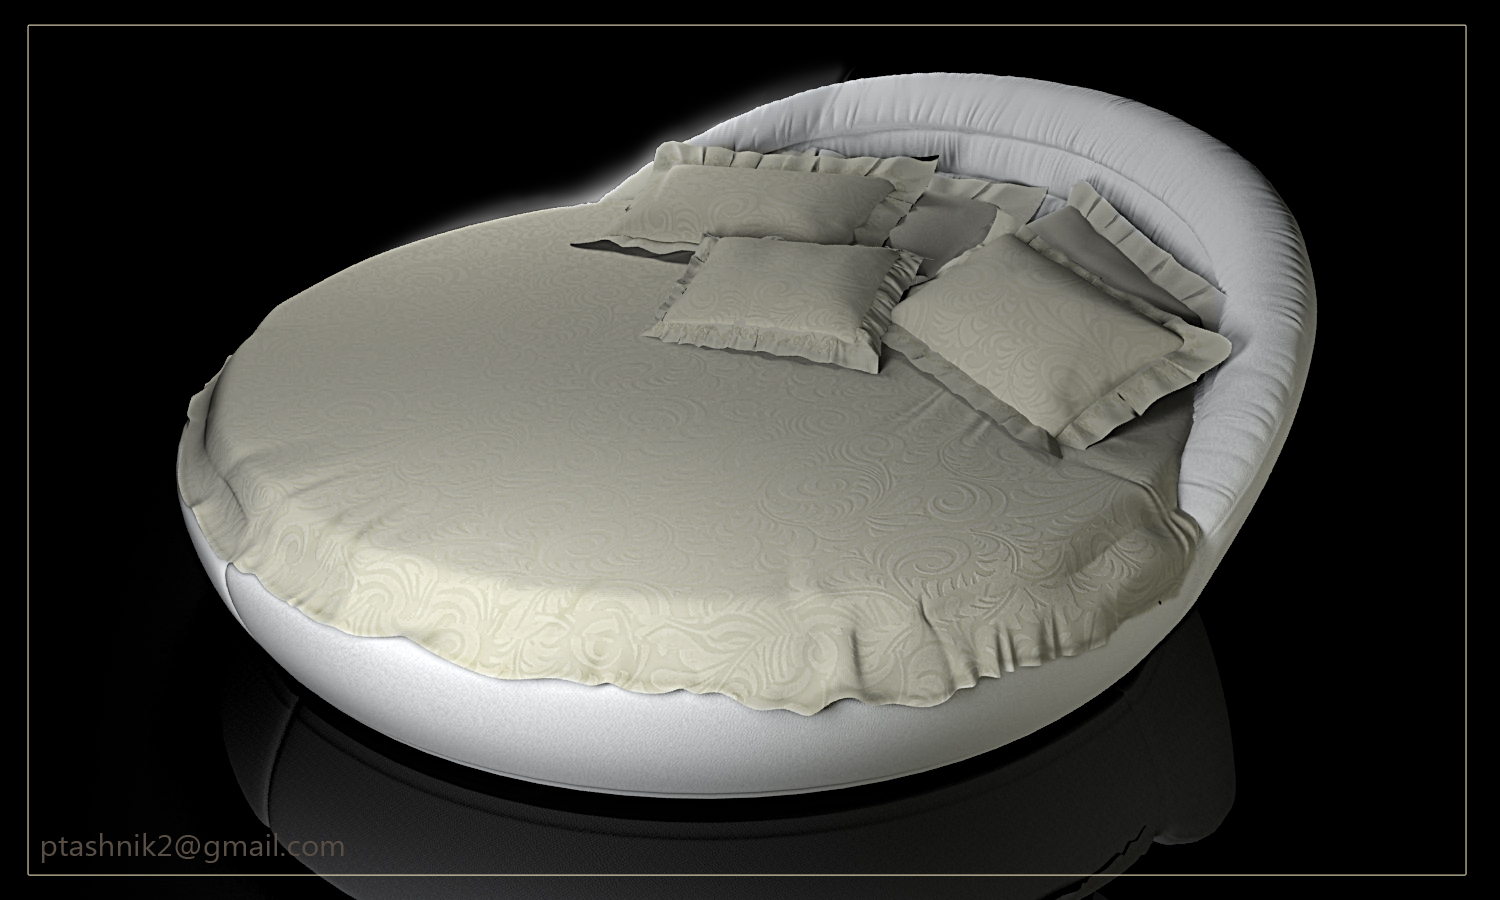 модель кровати